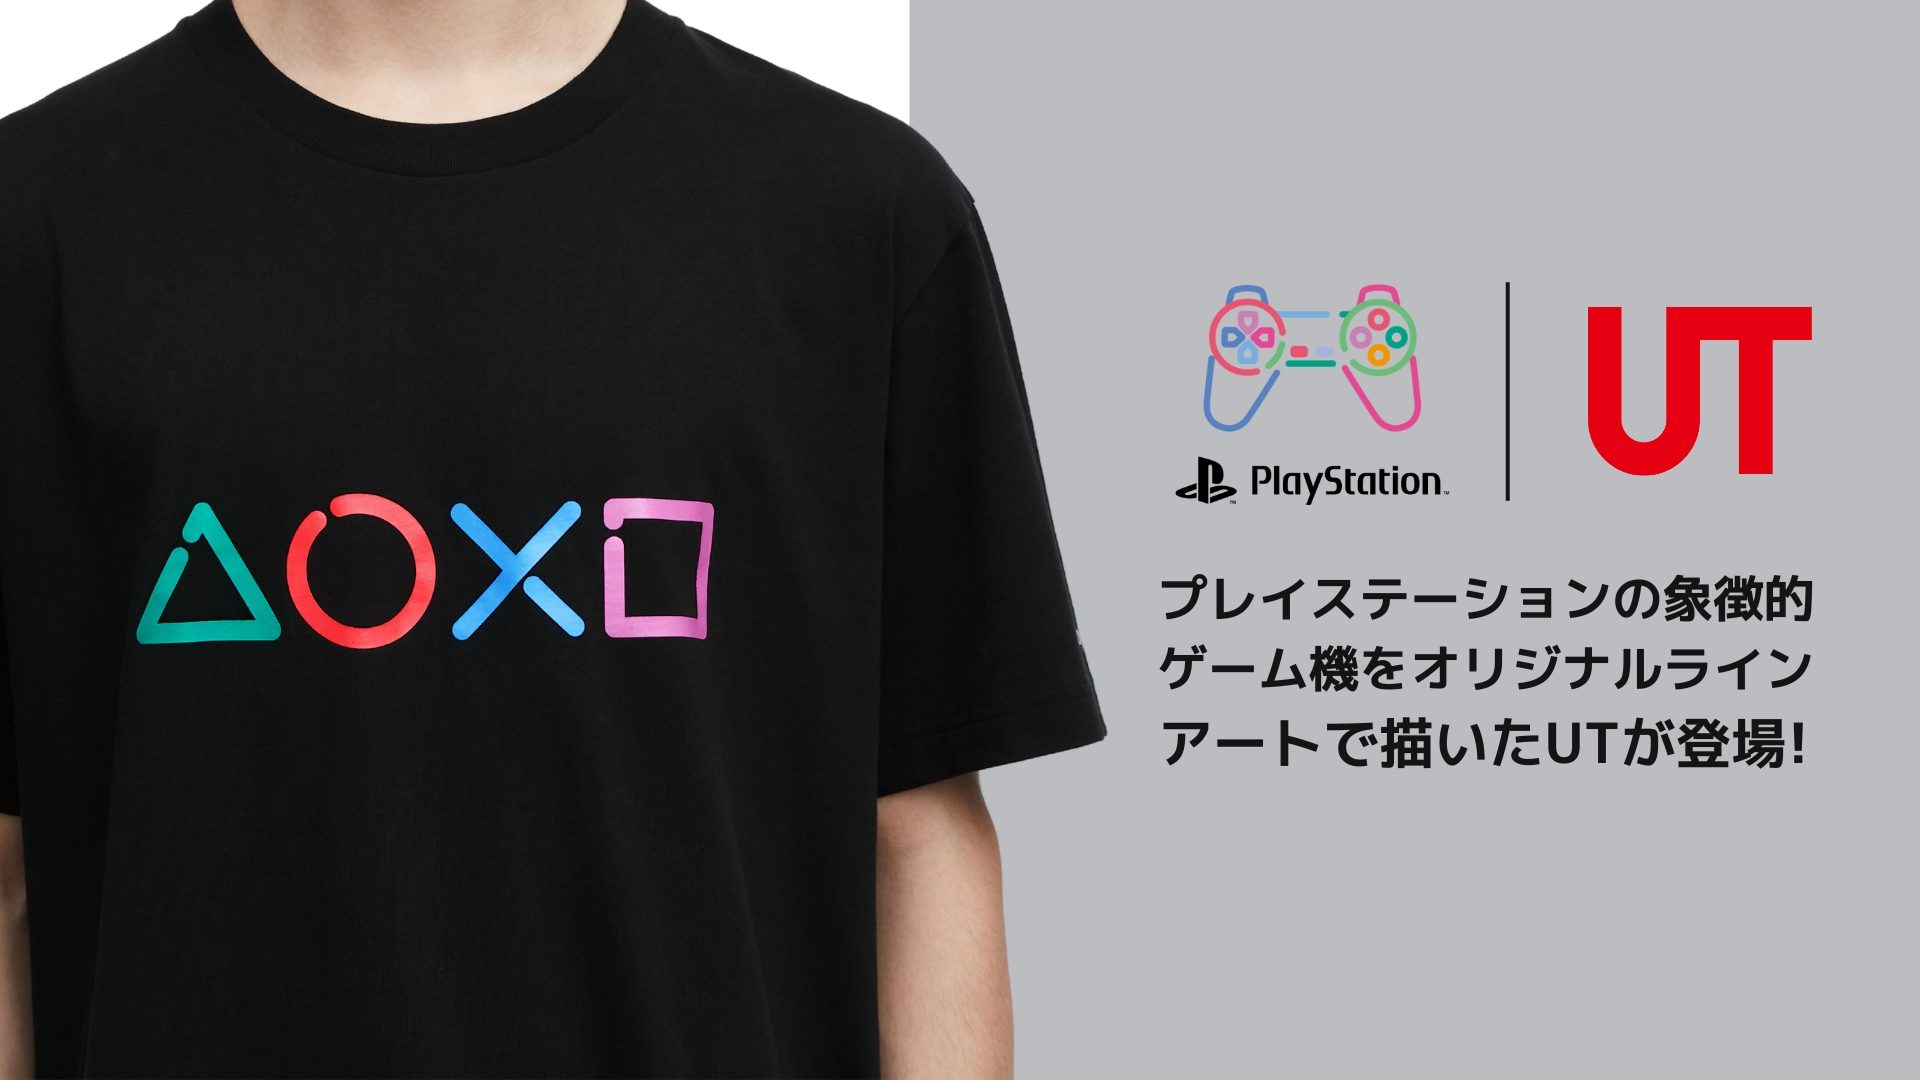 プレイステーション®のゲーム機がオリジナルラインアートのTシャツに